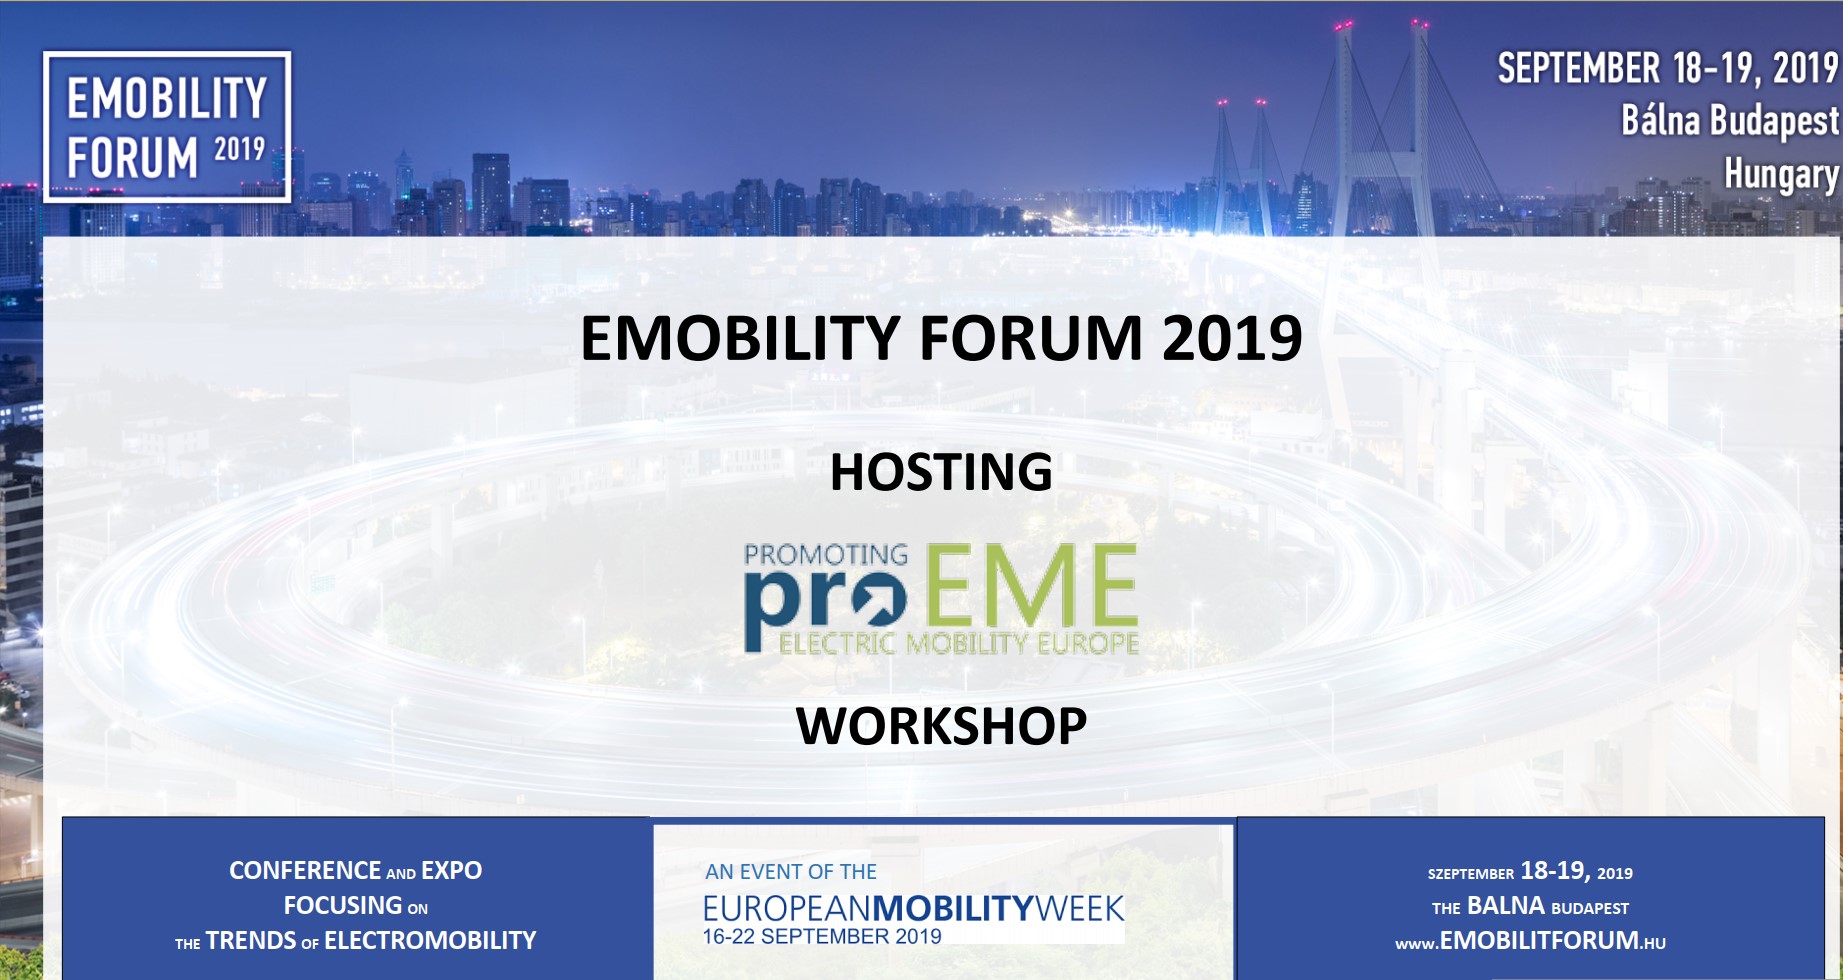 emobility forum 2019 hosting proeme